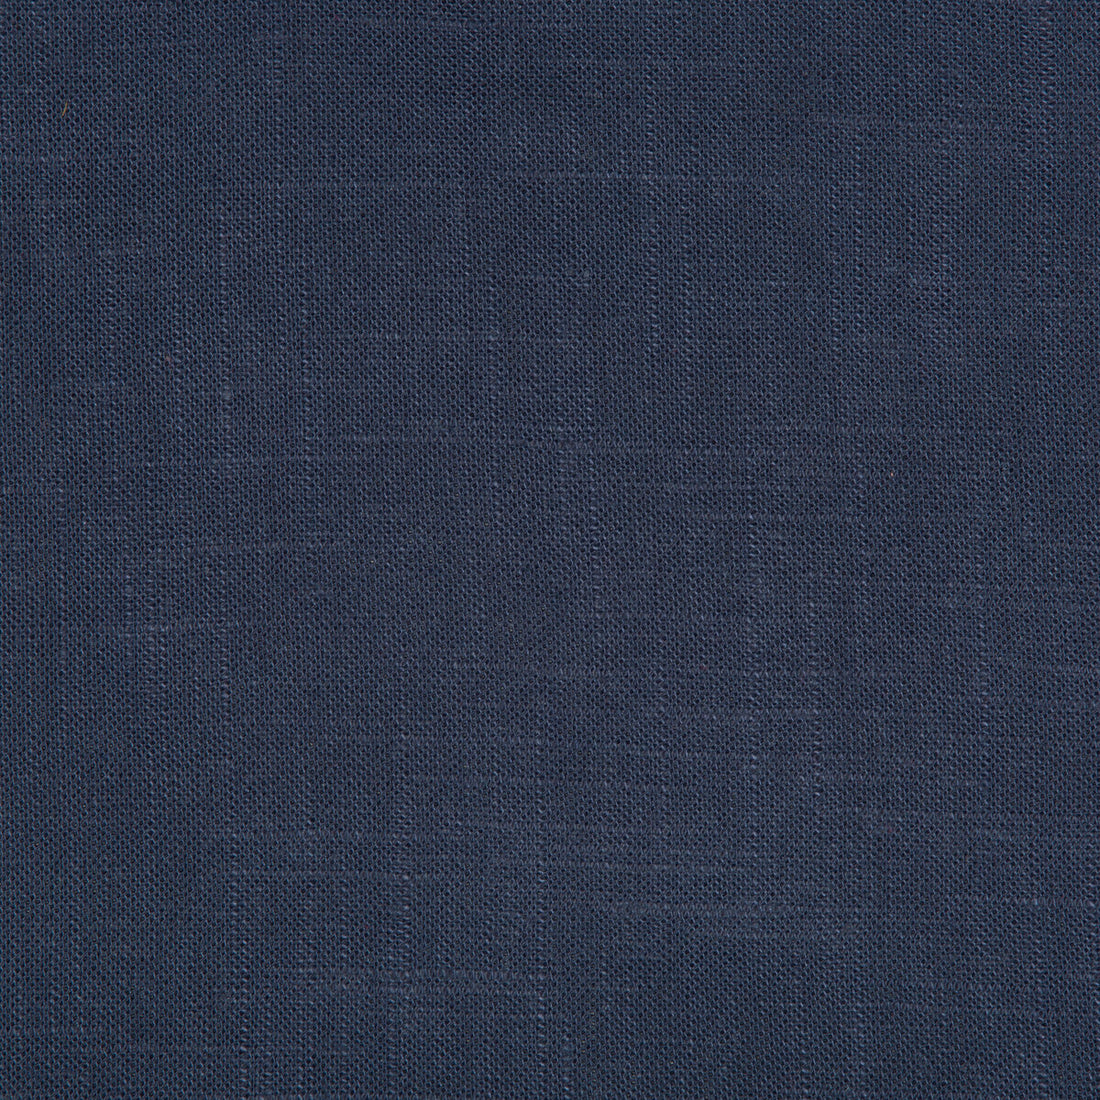 Kravet Basics fabric in 24573-5050 color - pattern 24573.5050.0 - by Kravet Basics